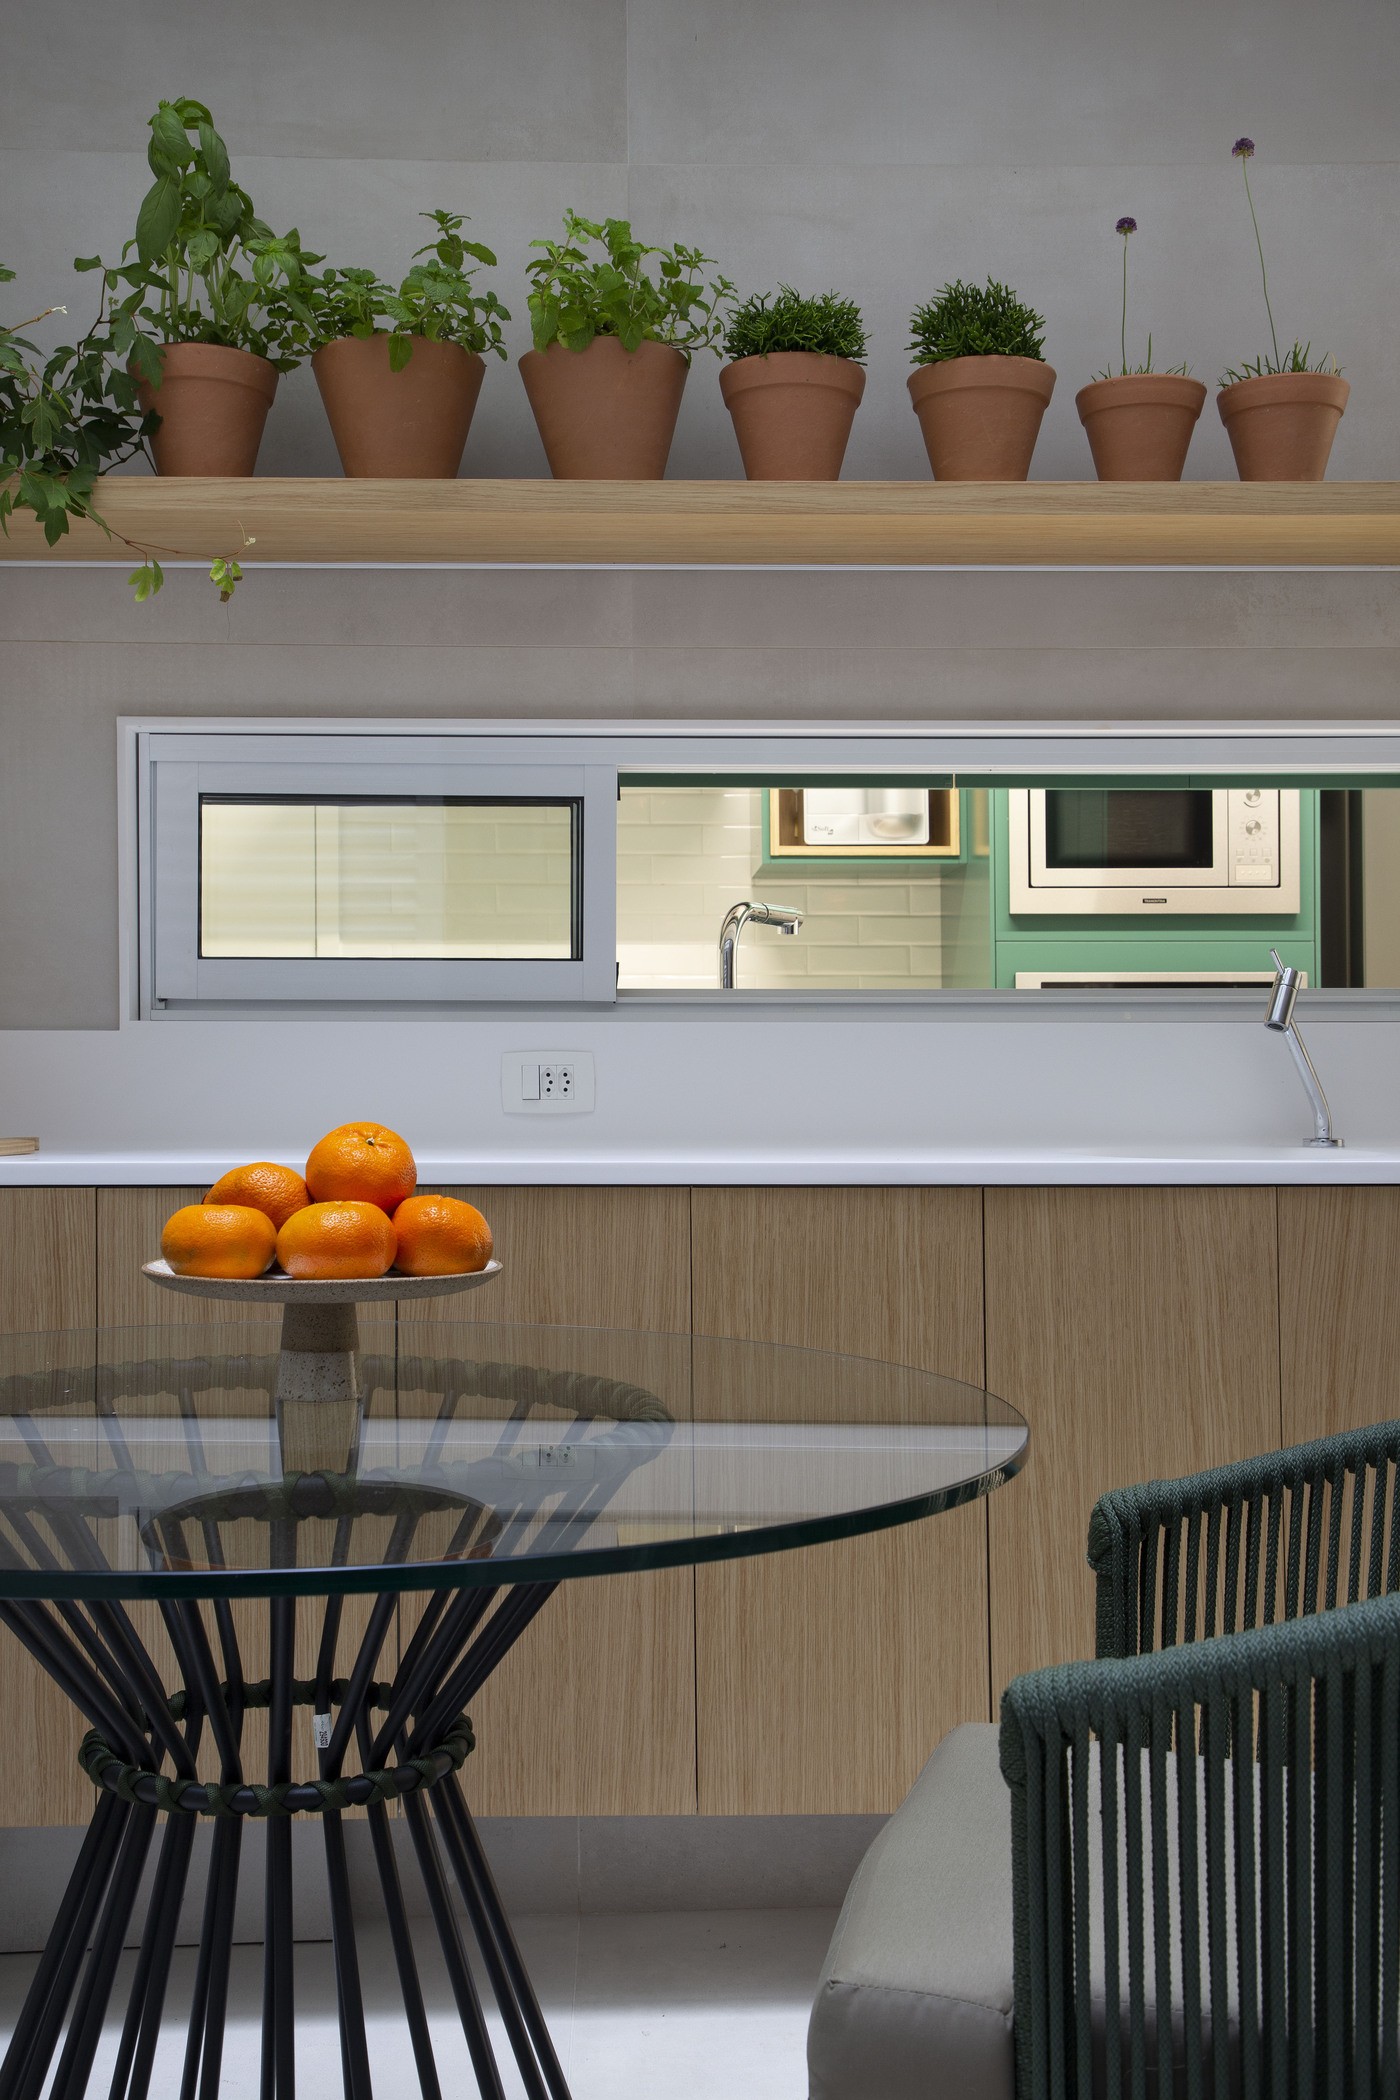 Décor do dia: cozinha com marcenaria verde é integrada à sala de almoço, após reforma (Foto: Denilson Machado/MCA Estúdio)